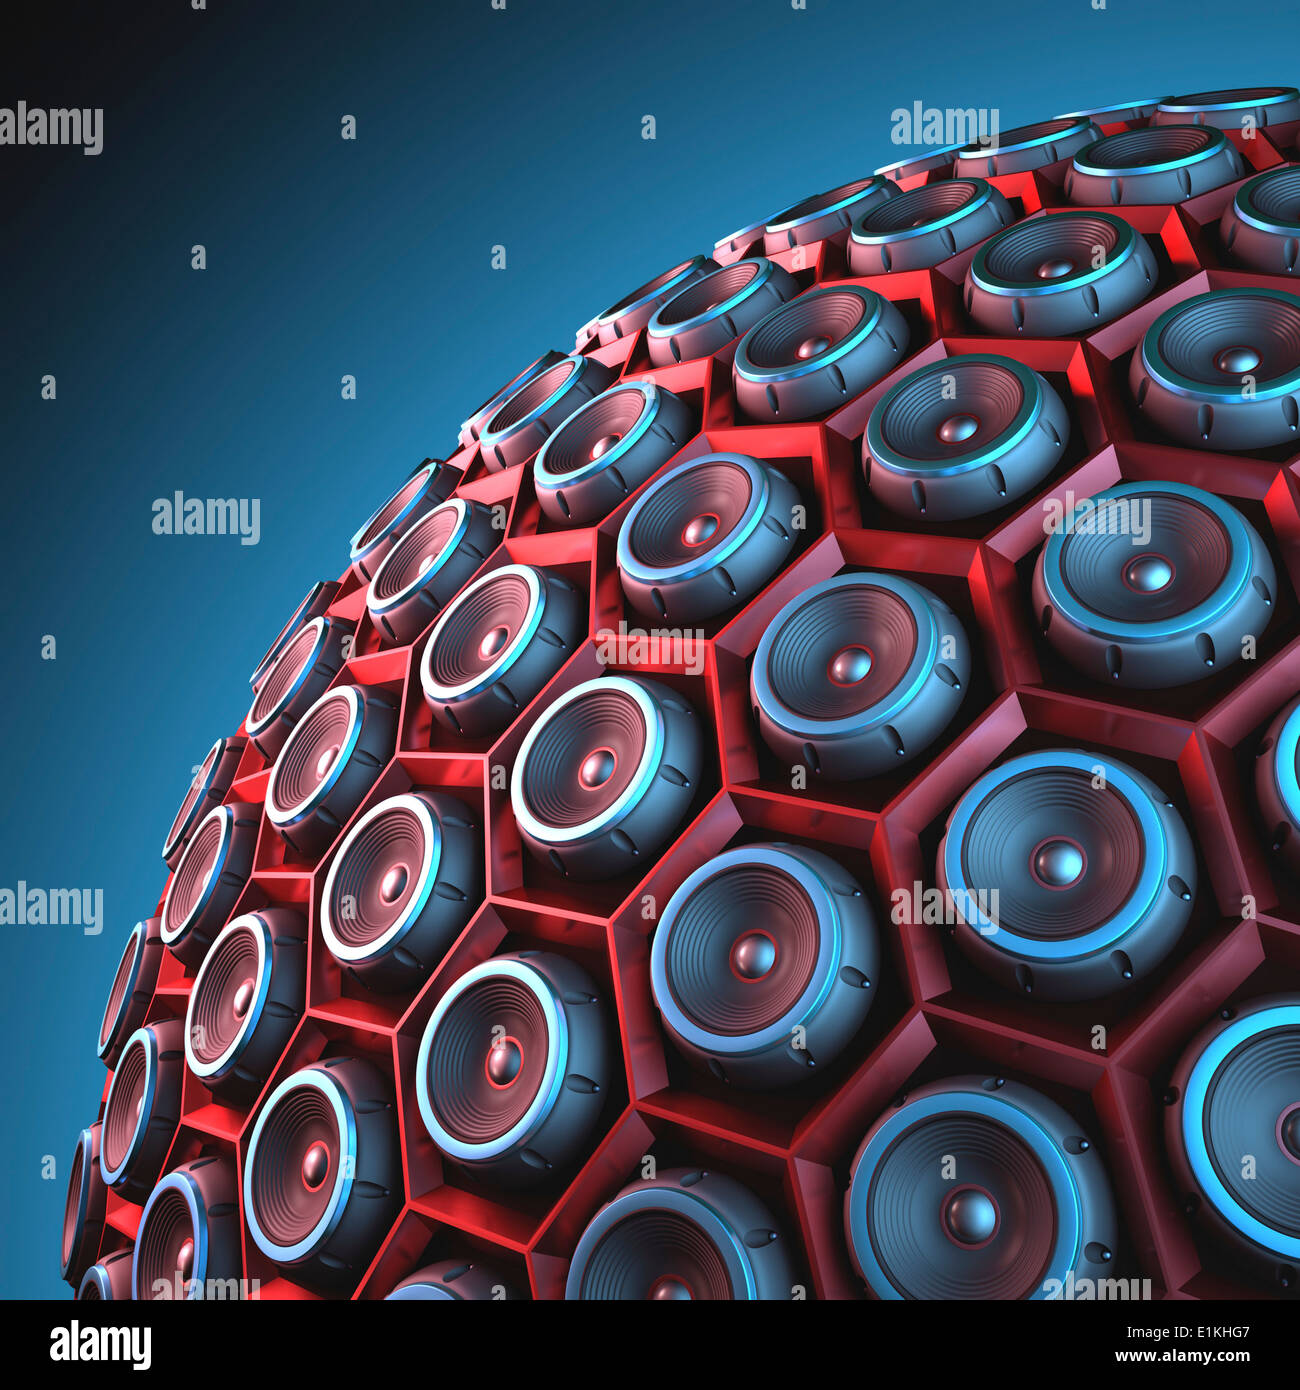 Illustrazione dei diffusori di musica in una forma sferica. Foto Stock